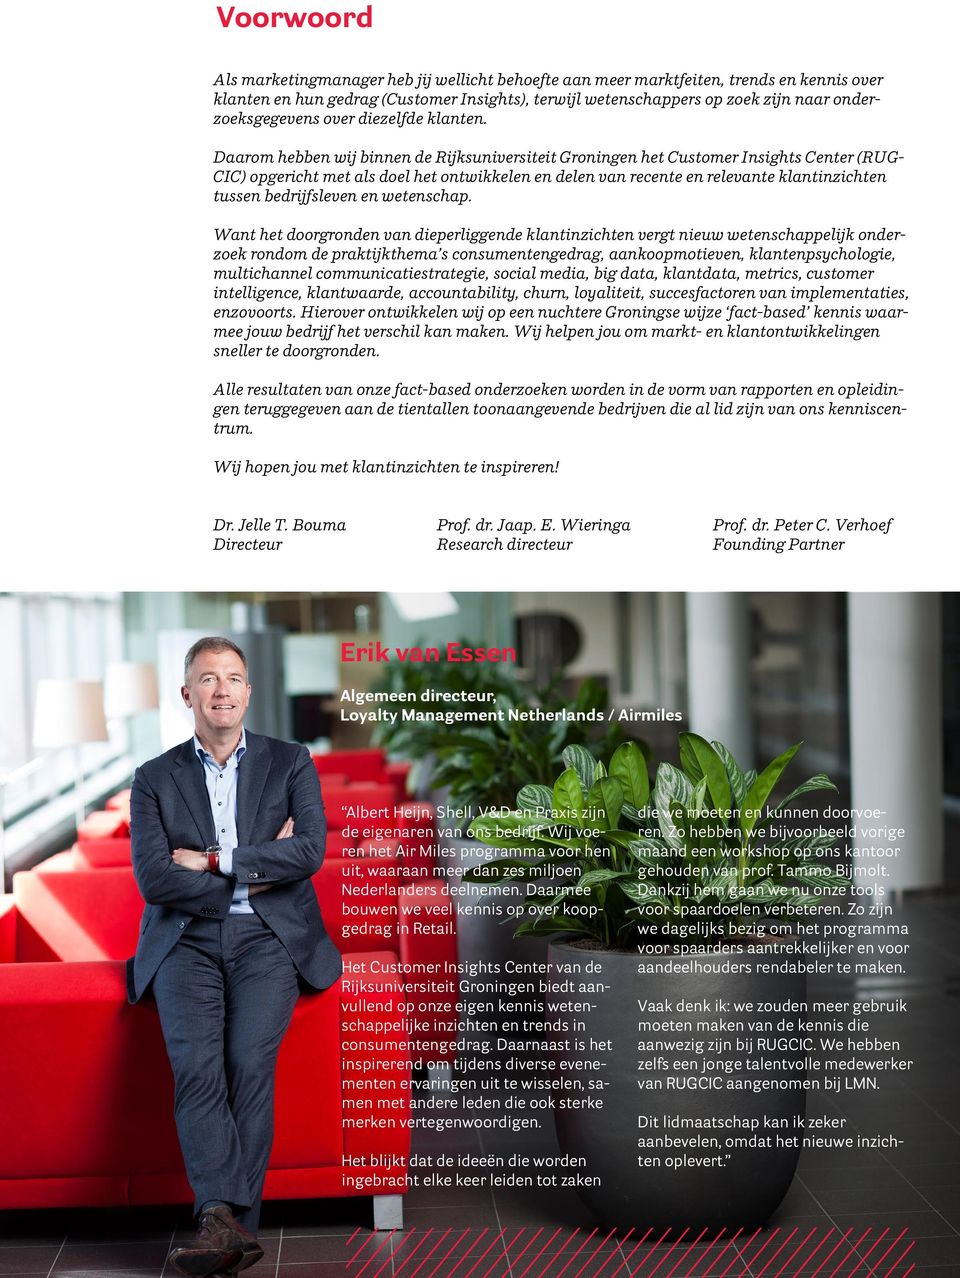 Daarom hebben wij binnen de Rijksuniversiteit Groningen het Customer Insights Center (RUG- CIC) opgericht met als doel het ontwikkelen en delen van recente en relevante klantinzichten tussen